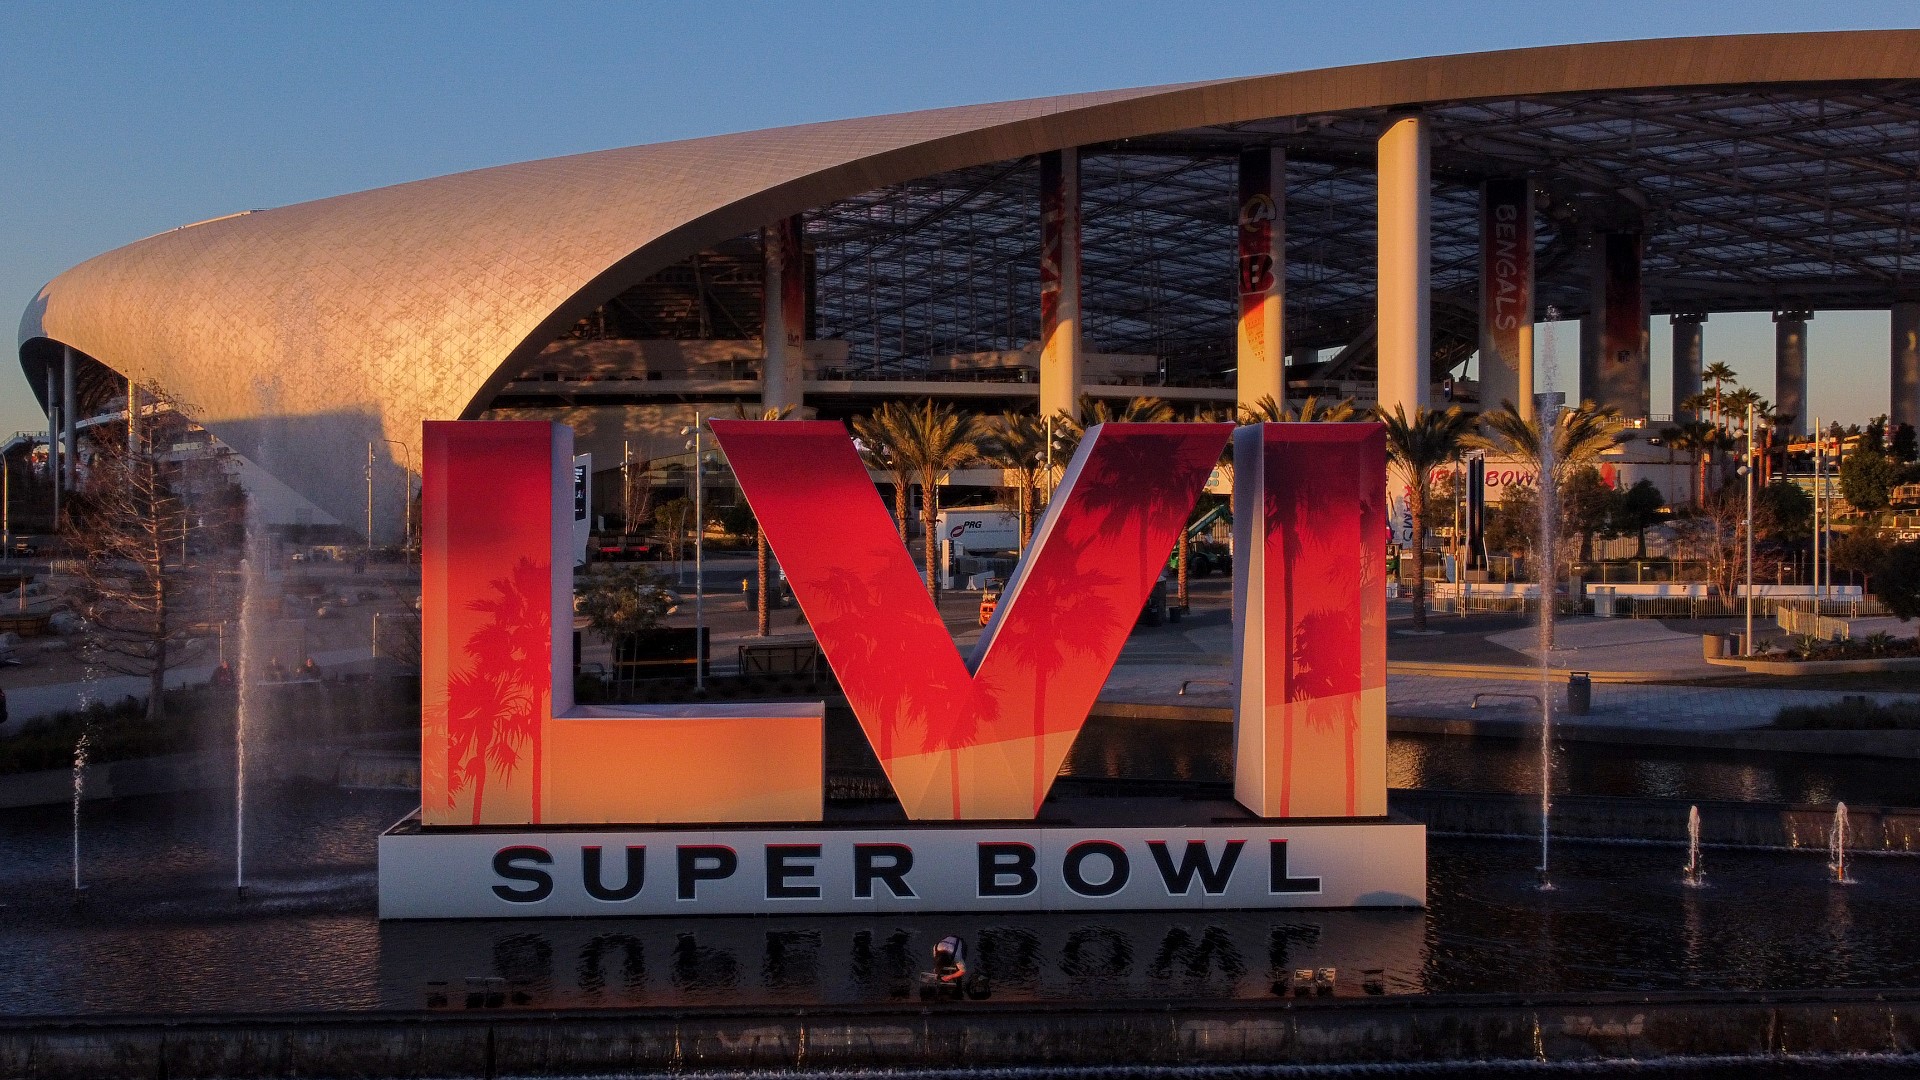 El próximo 13 de febrero se disputará el Super Bowl LVI en el SoFi Stadium de Inglewood California. Será un duelo inédito entre los Rams vs. Bengals.